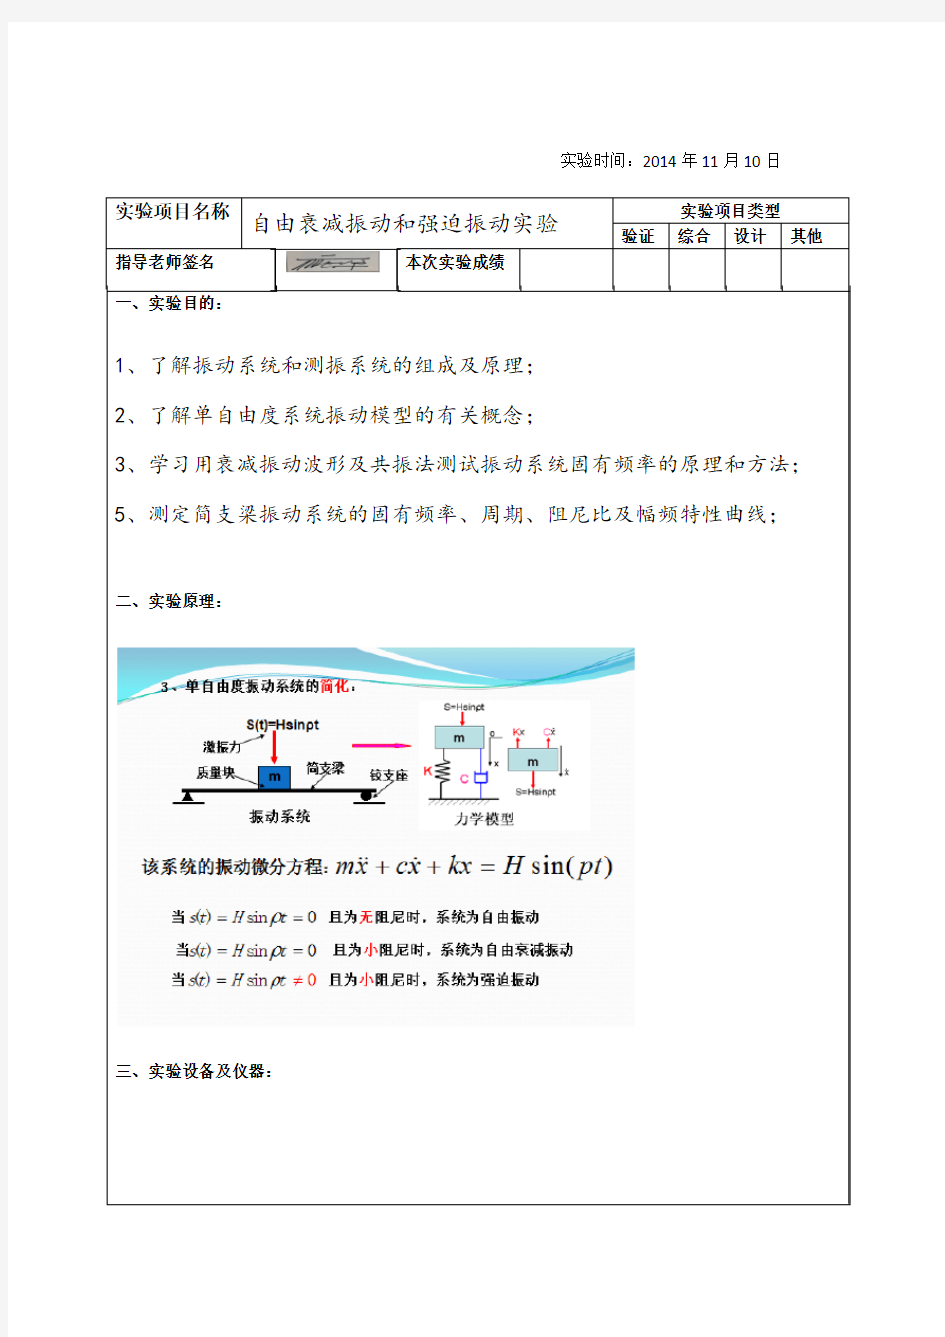 重庆大学理论力学自由衰减振动和强迫振动实验